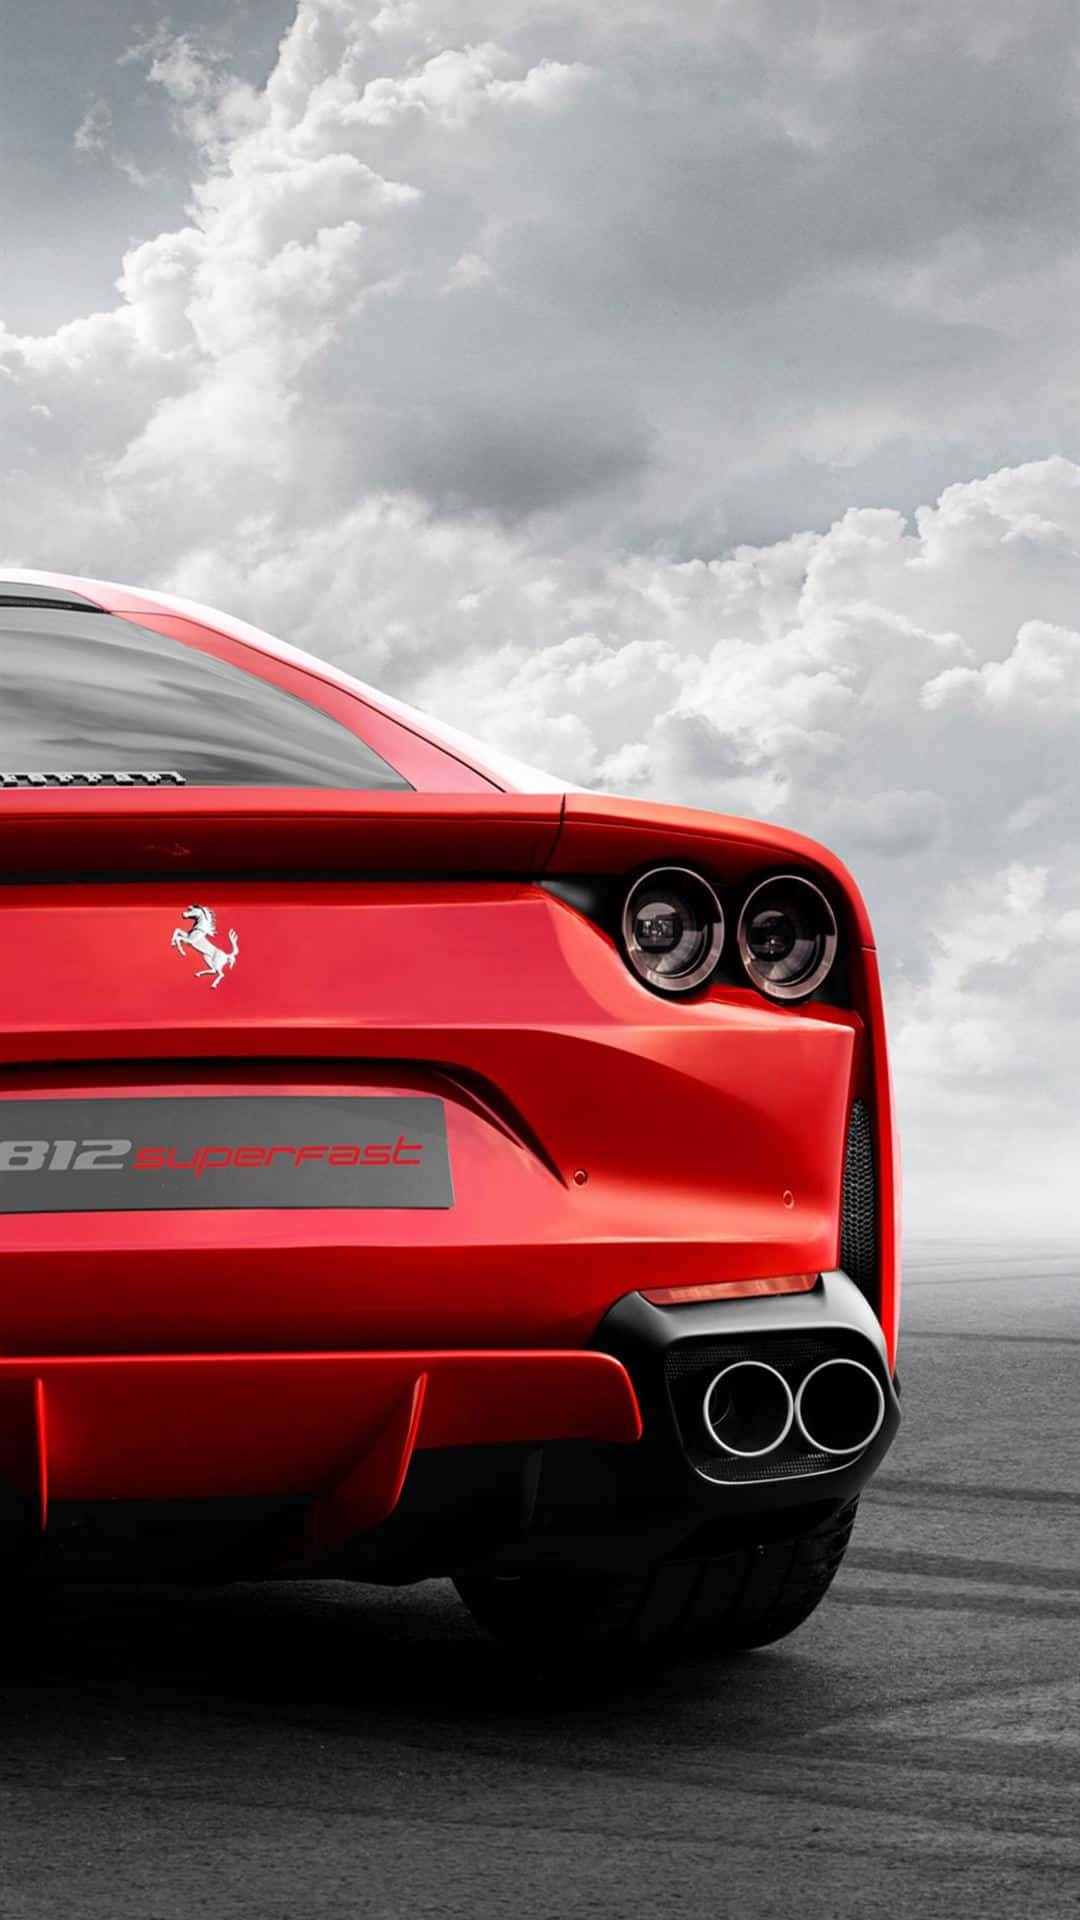 Bringensie Das Gebrüll Der Geschwindigkeit Auf Ihr X Mit Ferrari-stil. Wallpaper